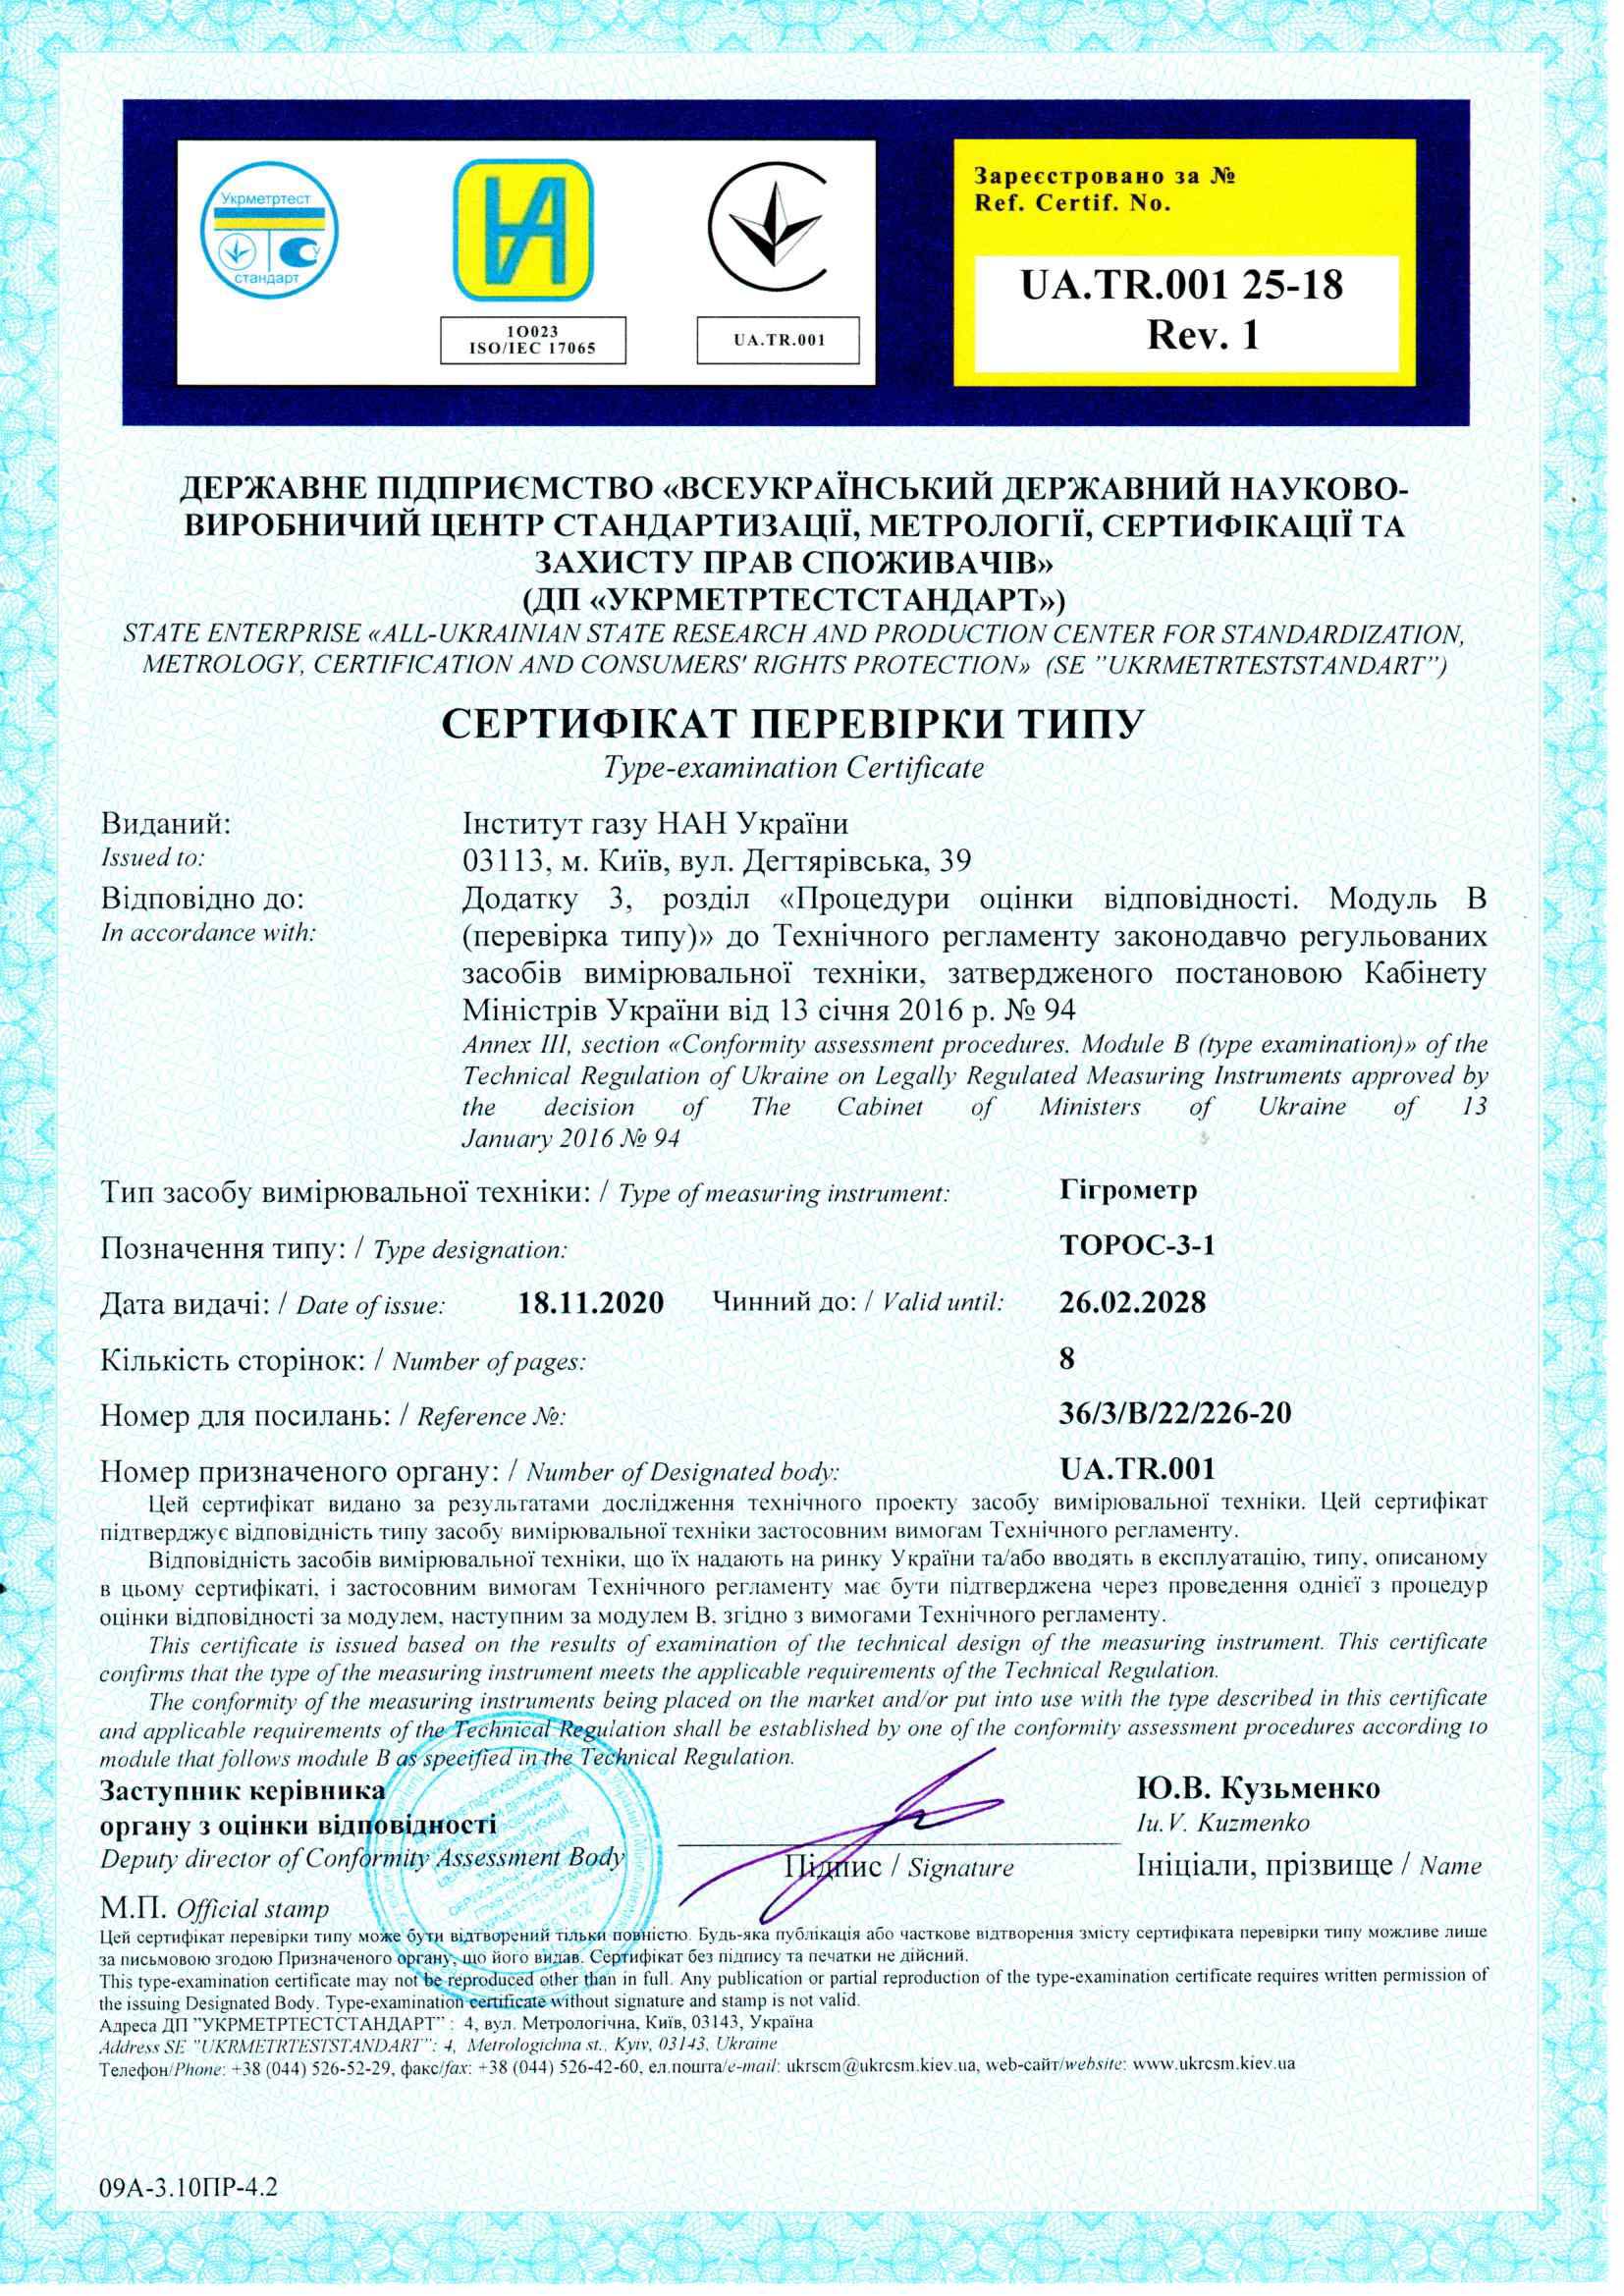 Сертификат проверки типа гигрометр ТОРОС-3-1